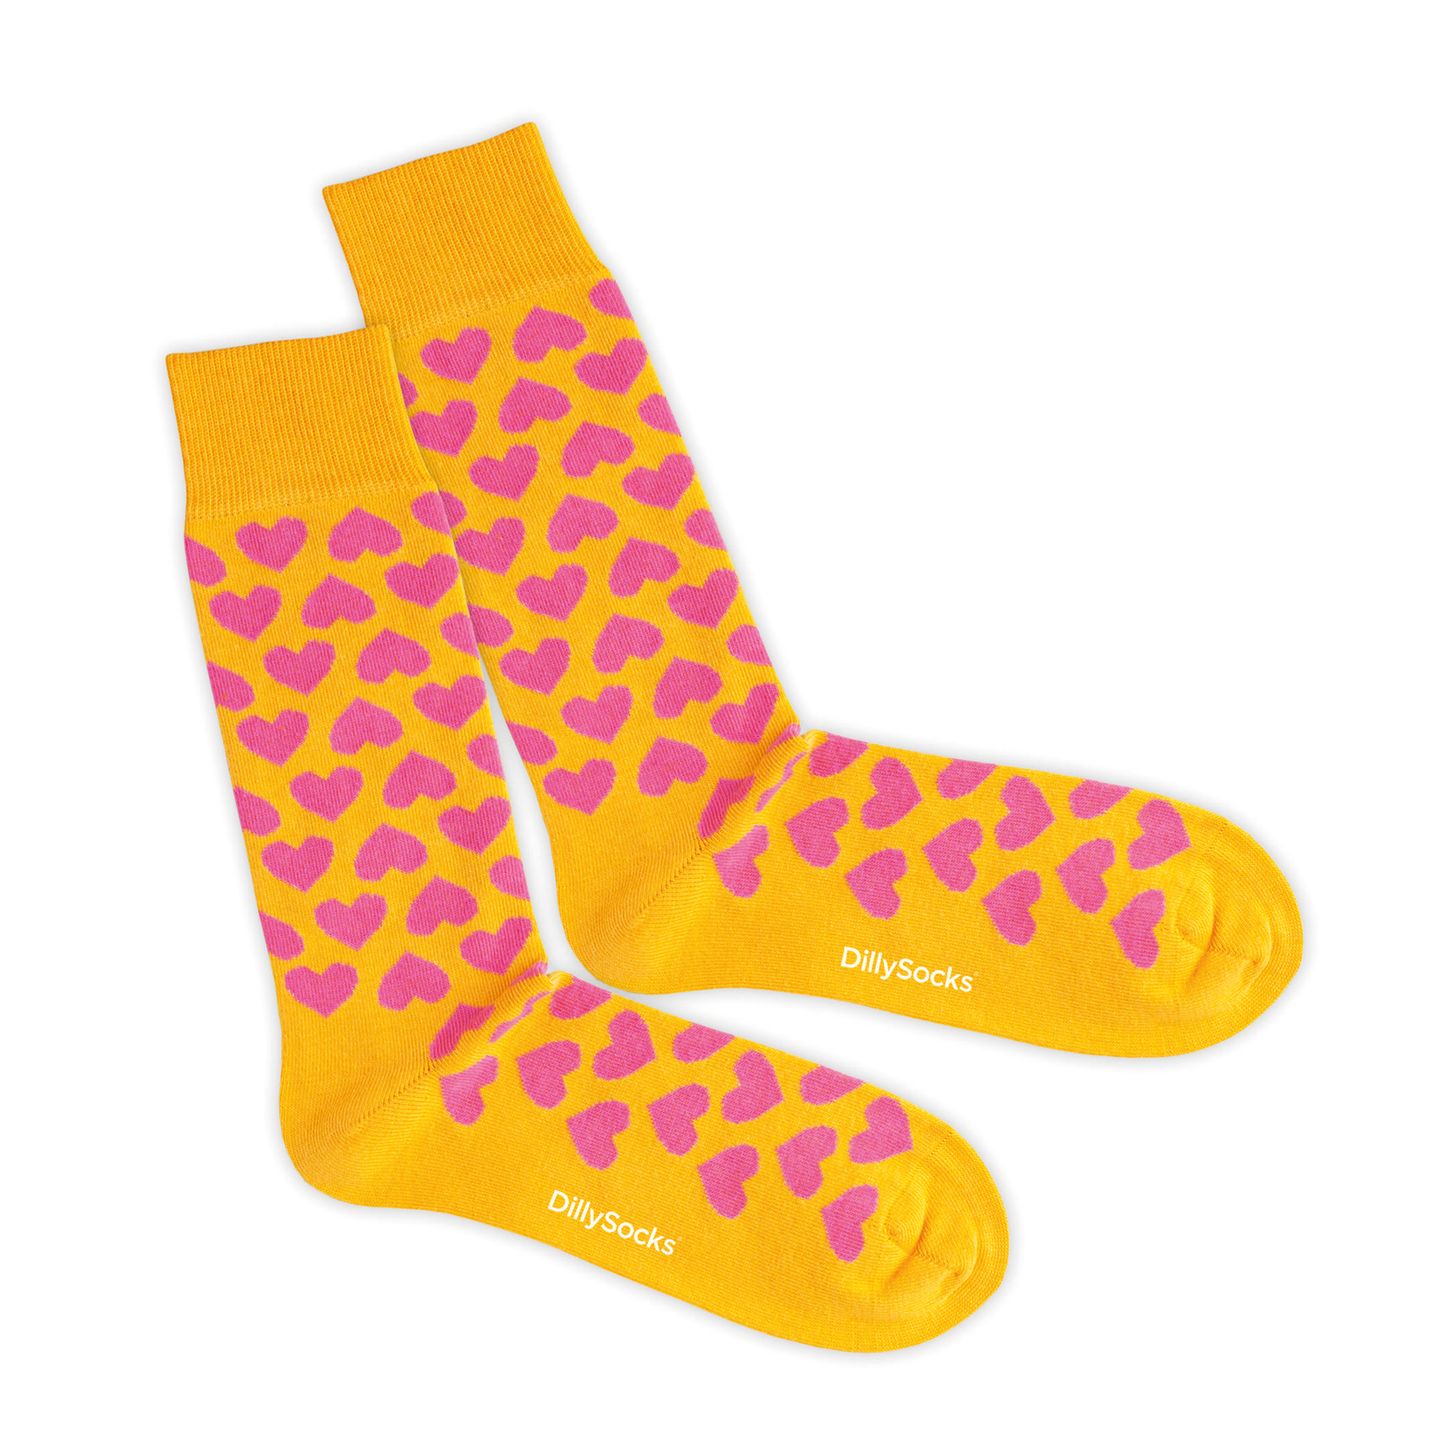 Socken kann man immer gebrauchen. Und mal ehrlich: die Farbkombi ist einfach der Knaller!   Bittersweet Love von Dilly Socks für 9 €